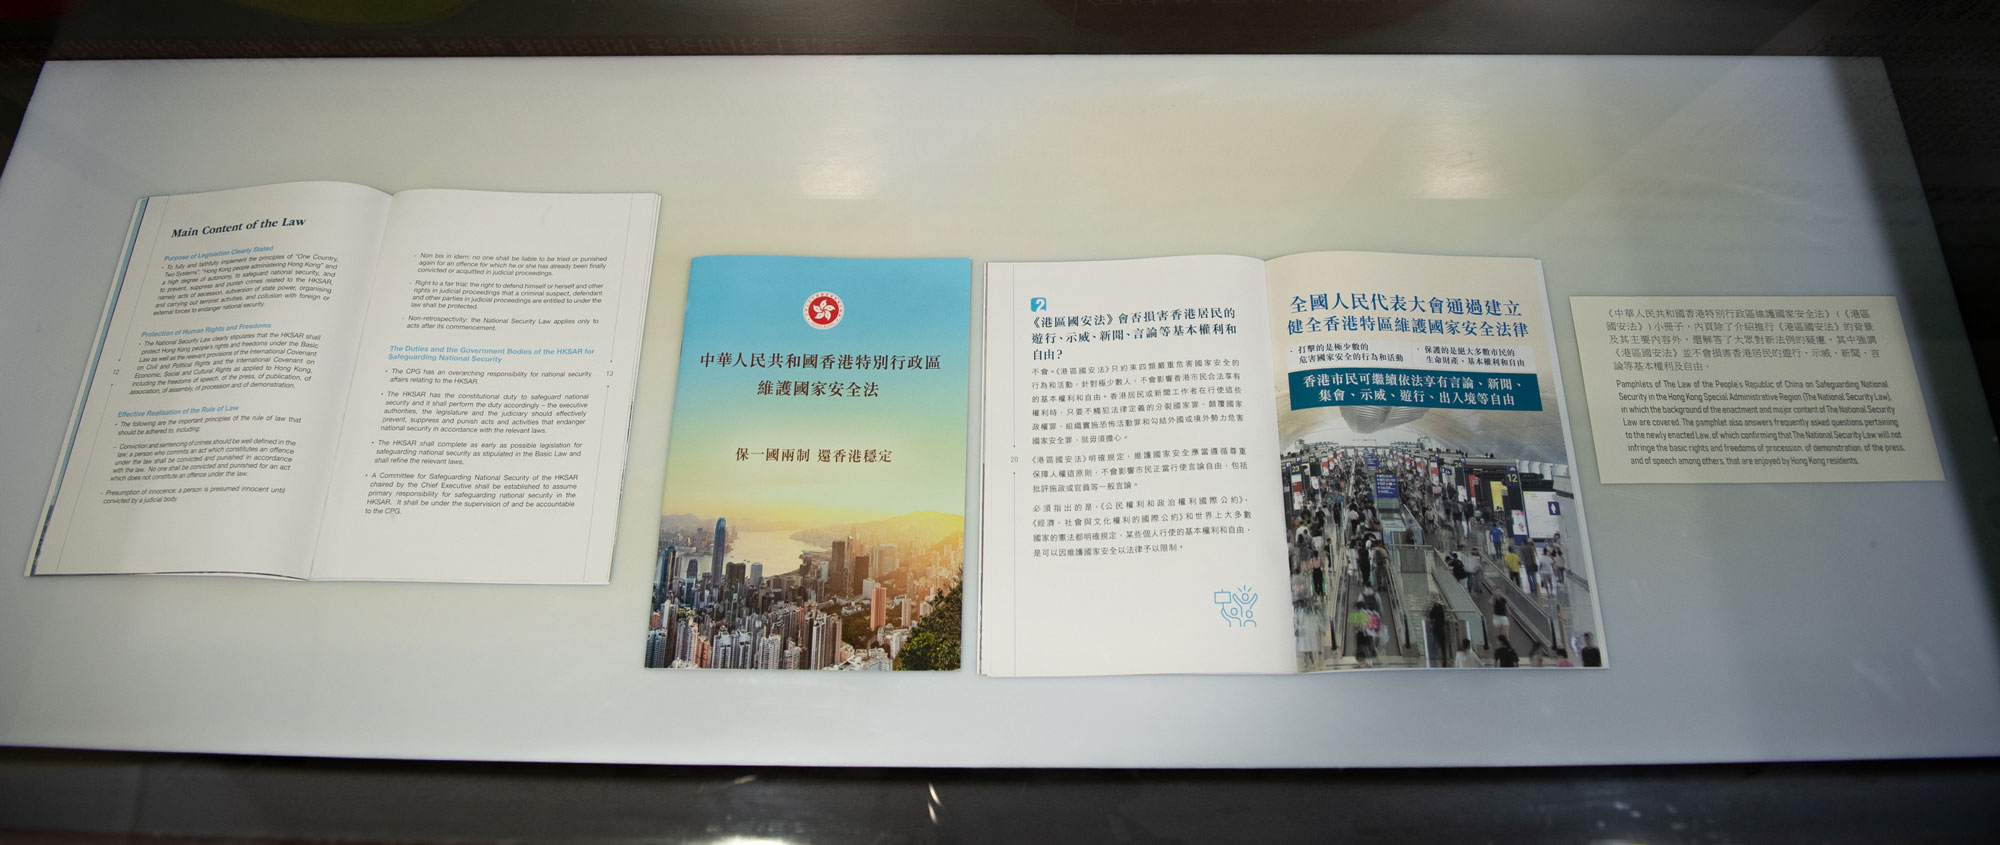 《中華人民共和國香港特別行政區維護國家安全法》小冊子。